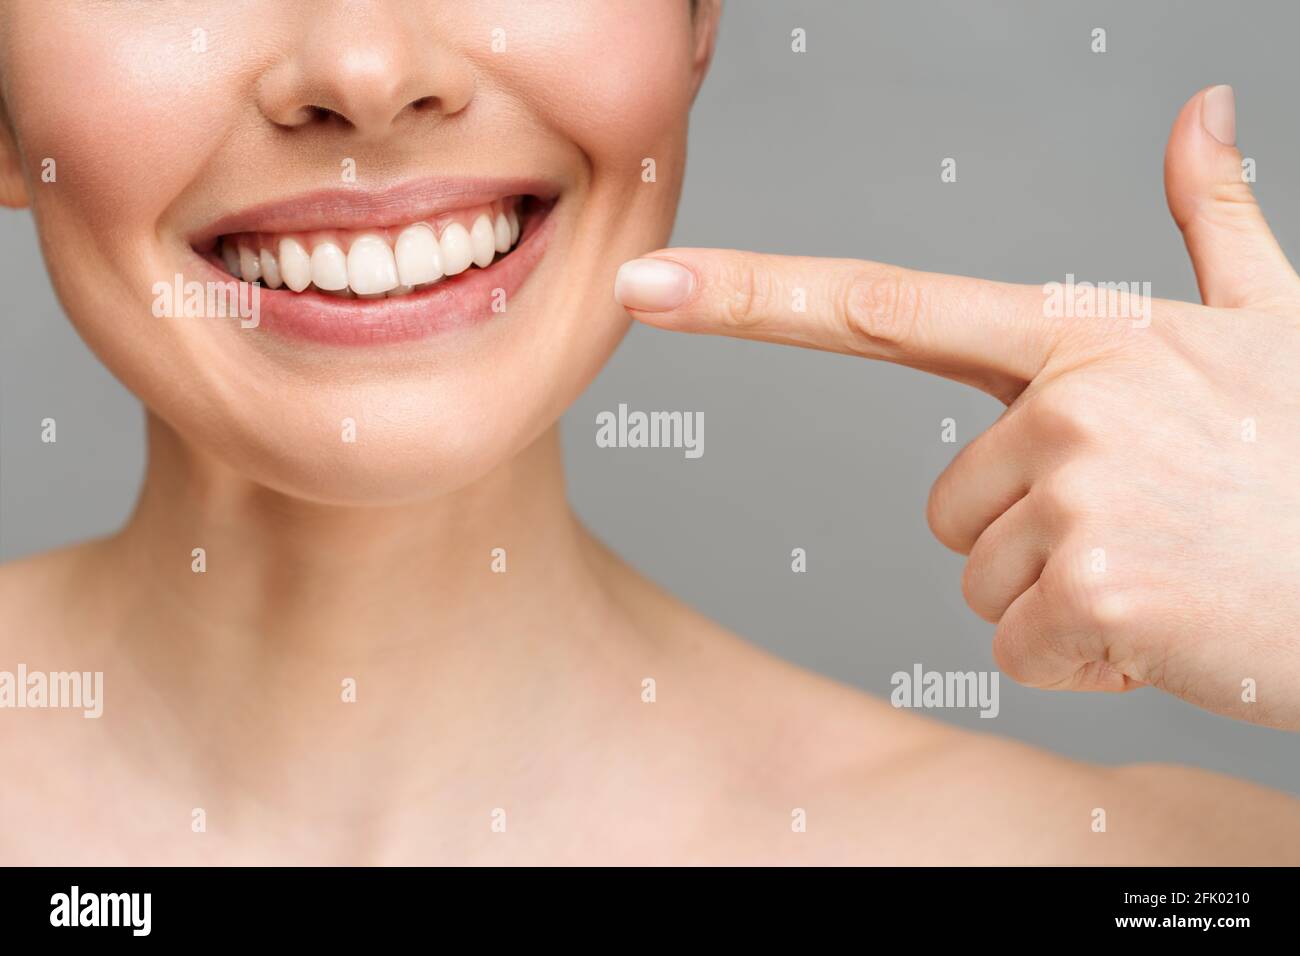 Perfekte gesunde Zähne Lächeln einer jungen Frau. Zahnaufhellung. Zahnpflege, Stomatologie Konzept. Stockfoto